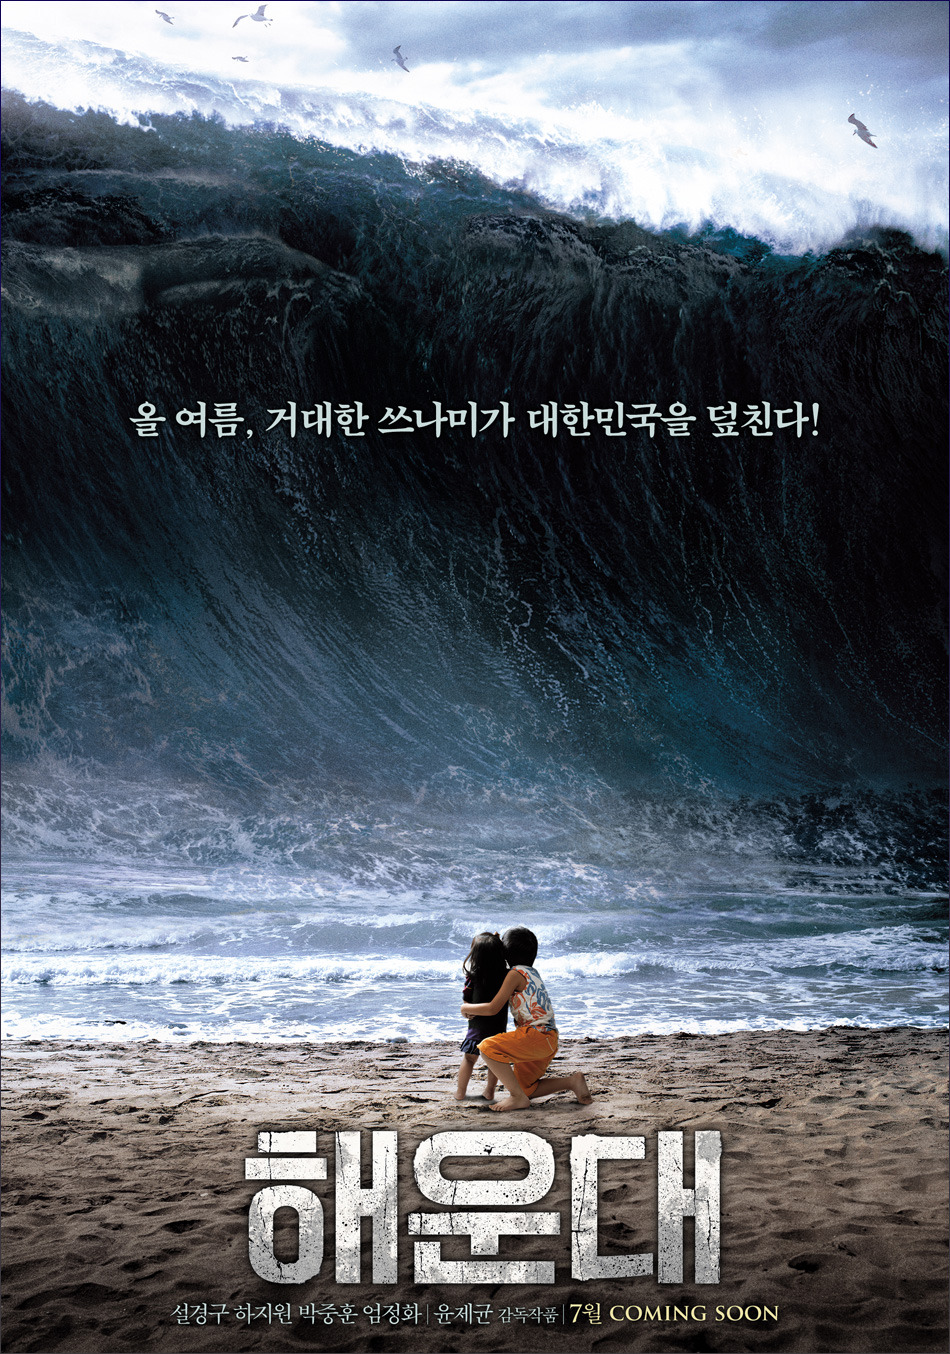 Pour Tame with time Haeundae - Haeundae (2009) - Film - CineMagia.ro